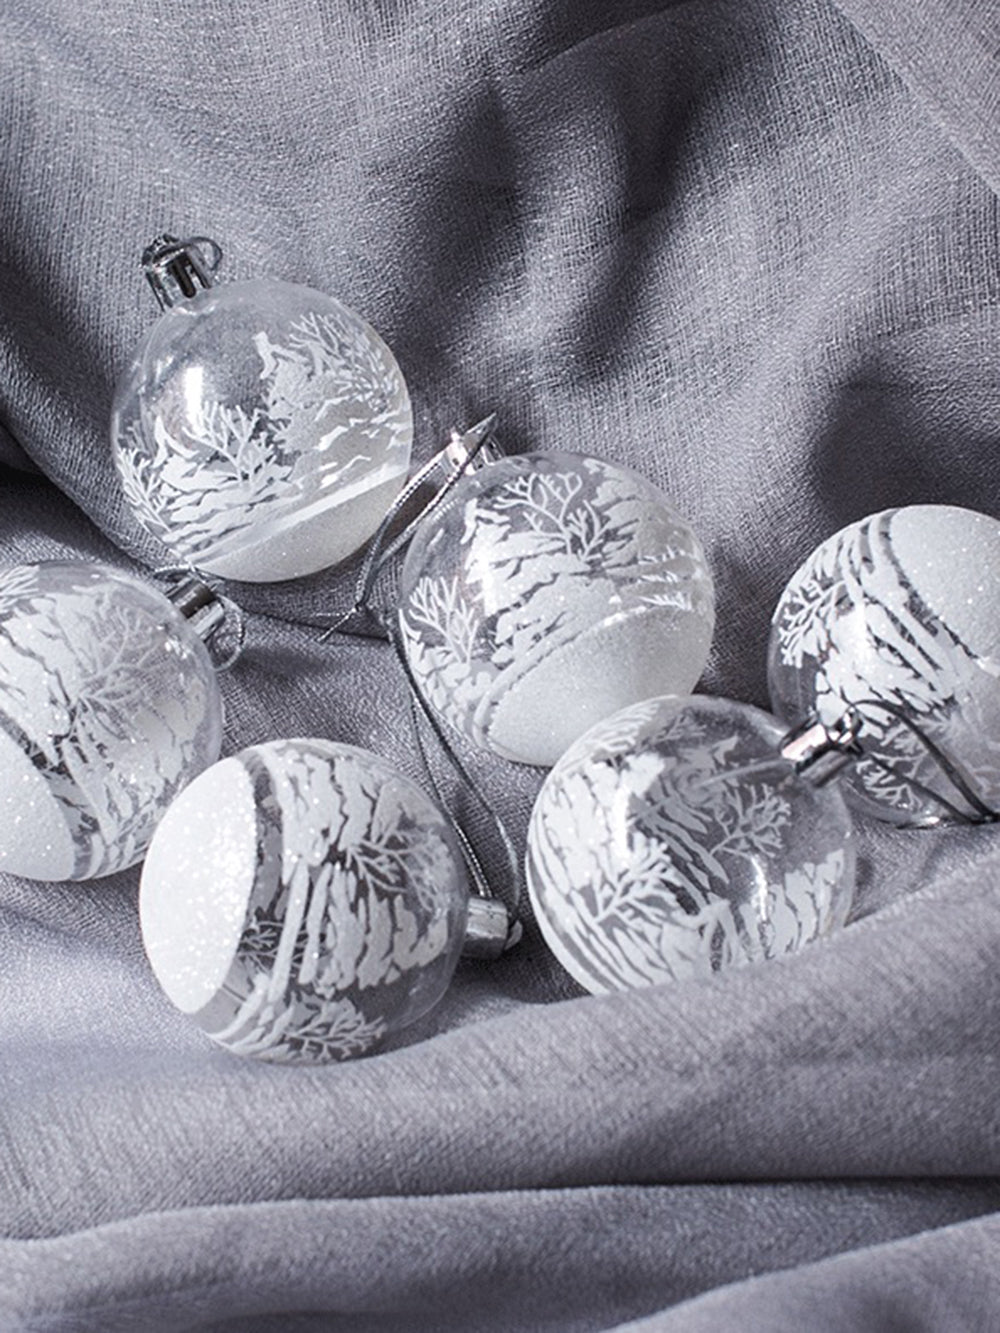 6 個の透明なボール窓クリスマスツリー装飾ペンダント